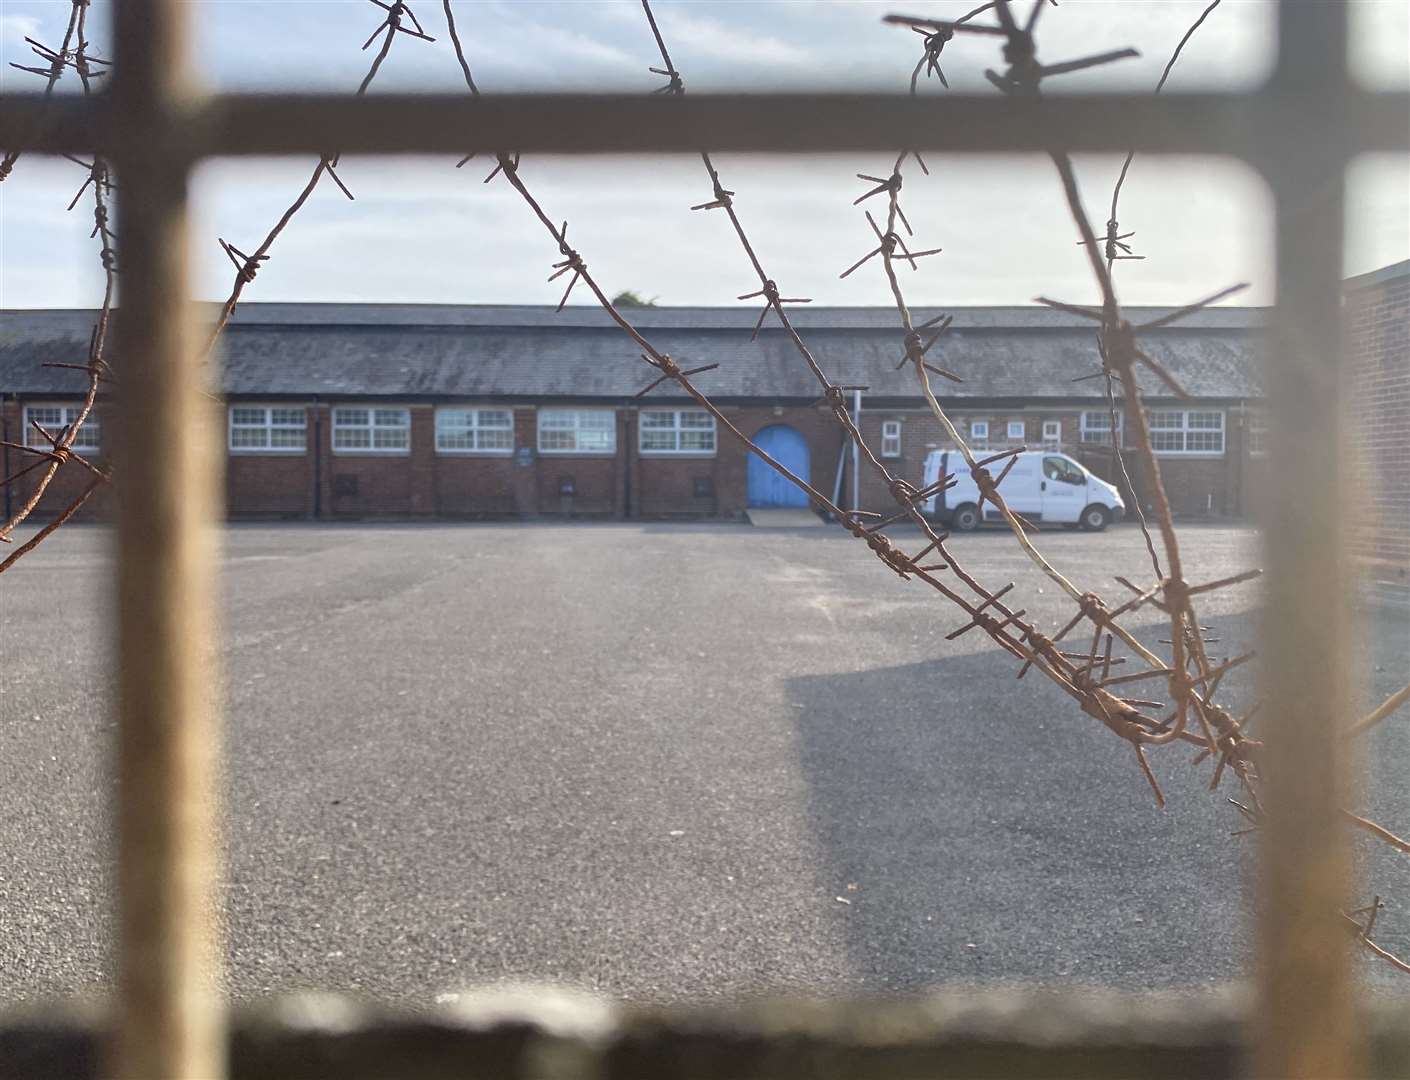 Napier Barracks in Folkestone is being used to house asylum seekers